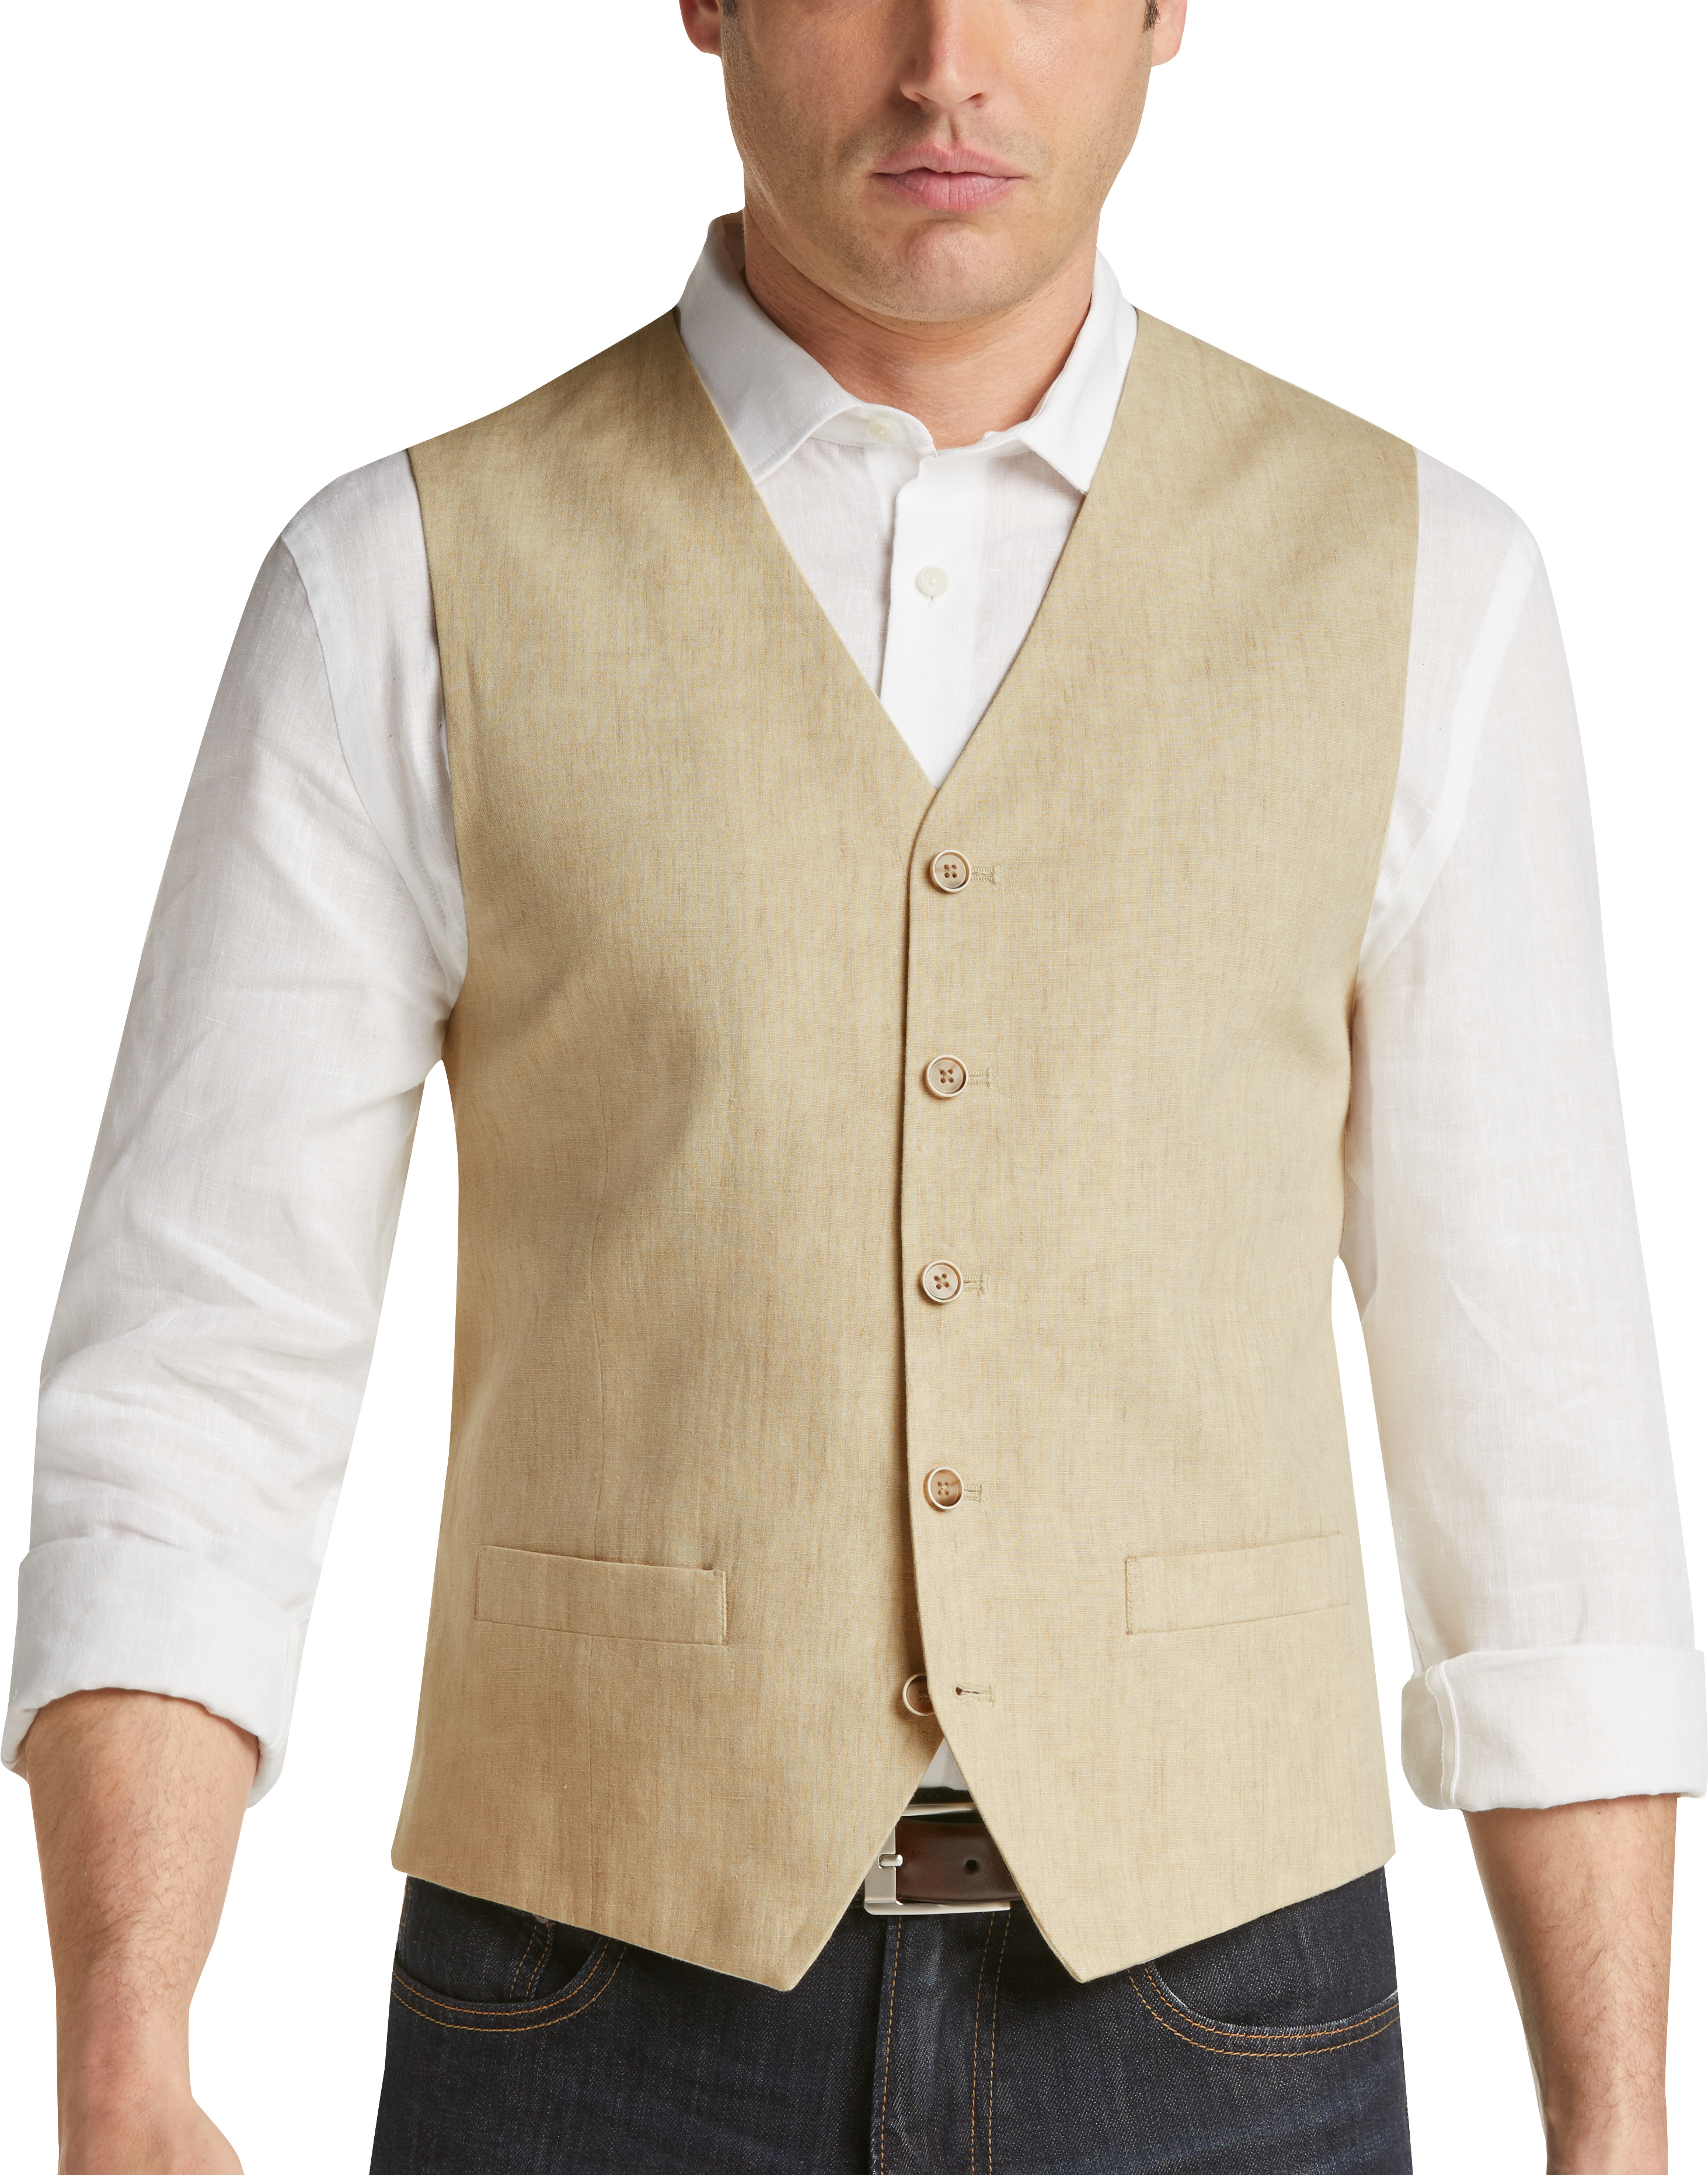 Joseph Abboud Sand Vest - Men's Sale | Men's Wearhouse